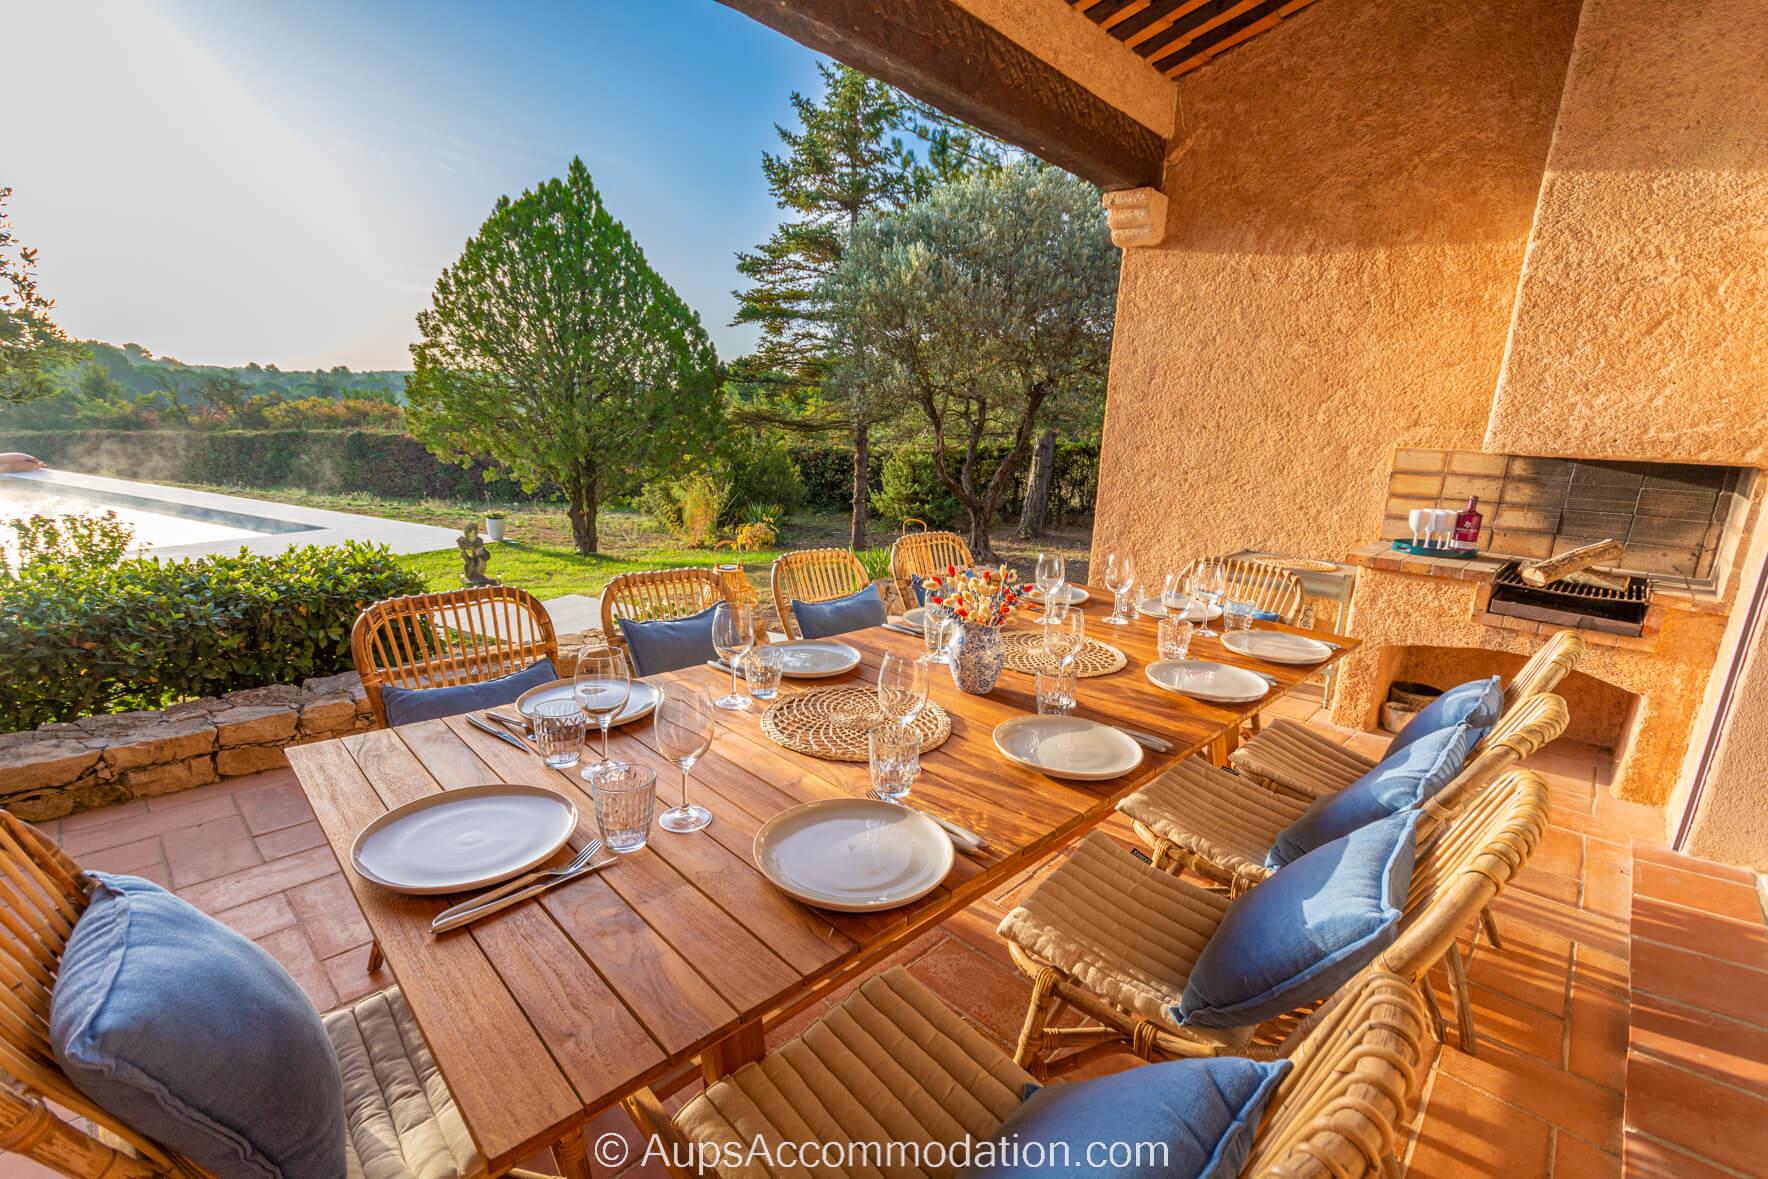 Le Mas Aups - La terrasse principale couverte avec barbecue menant de la cuisine, donnant sur la piscine et les jardins